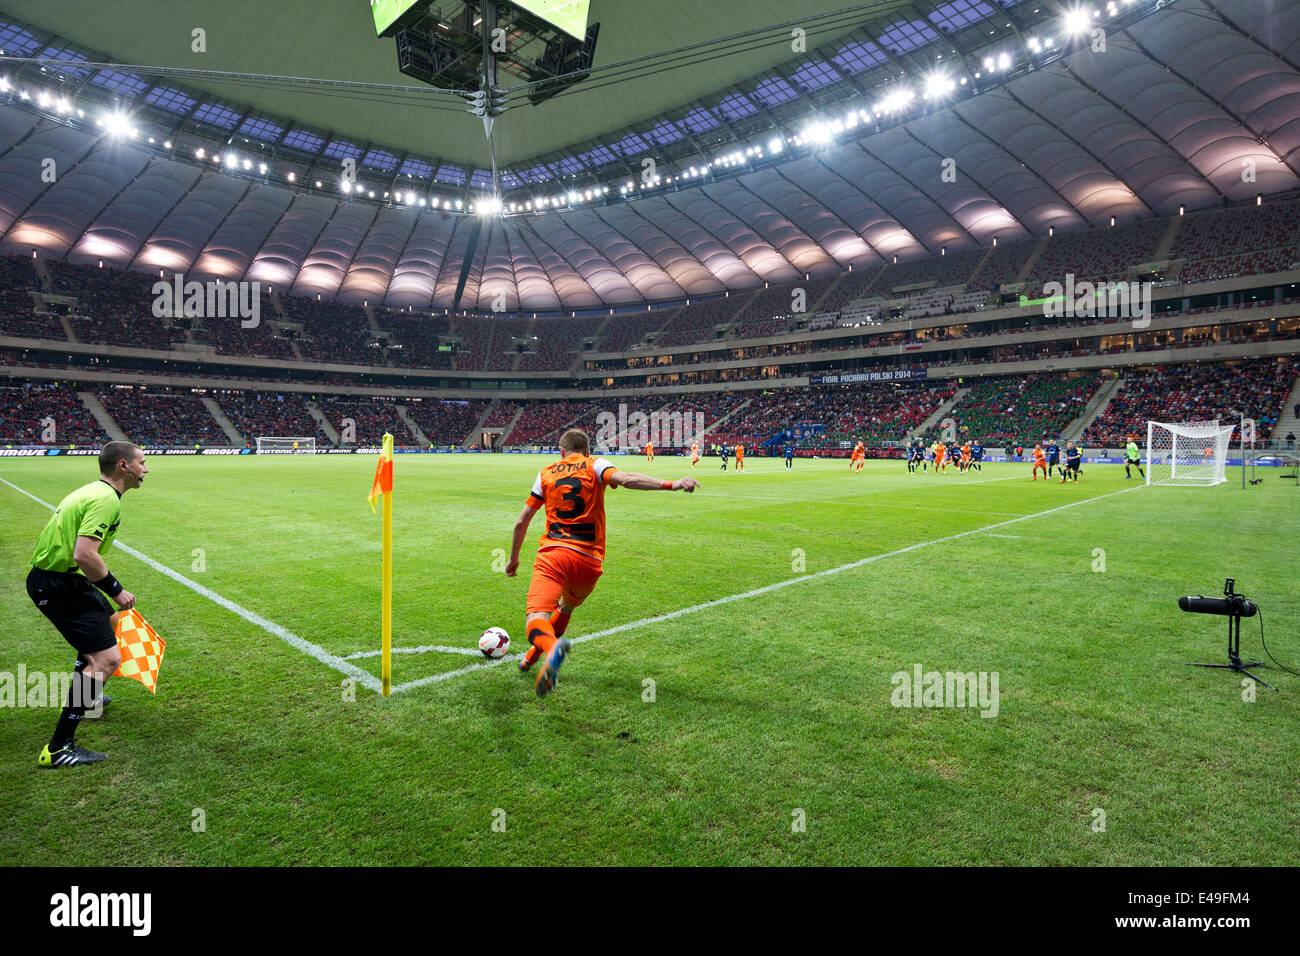 Dorde Cotra botter un ballon de corner au stade national polonais pendant la finale de la Coupe de Pologne Banque D'Images